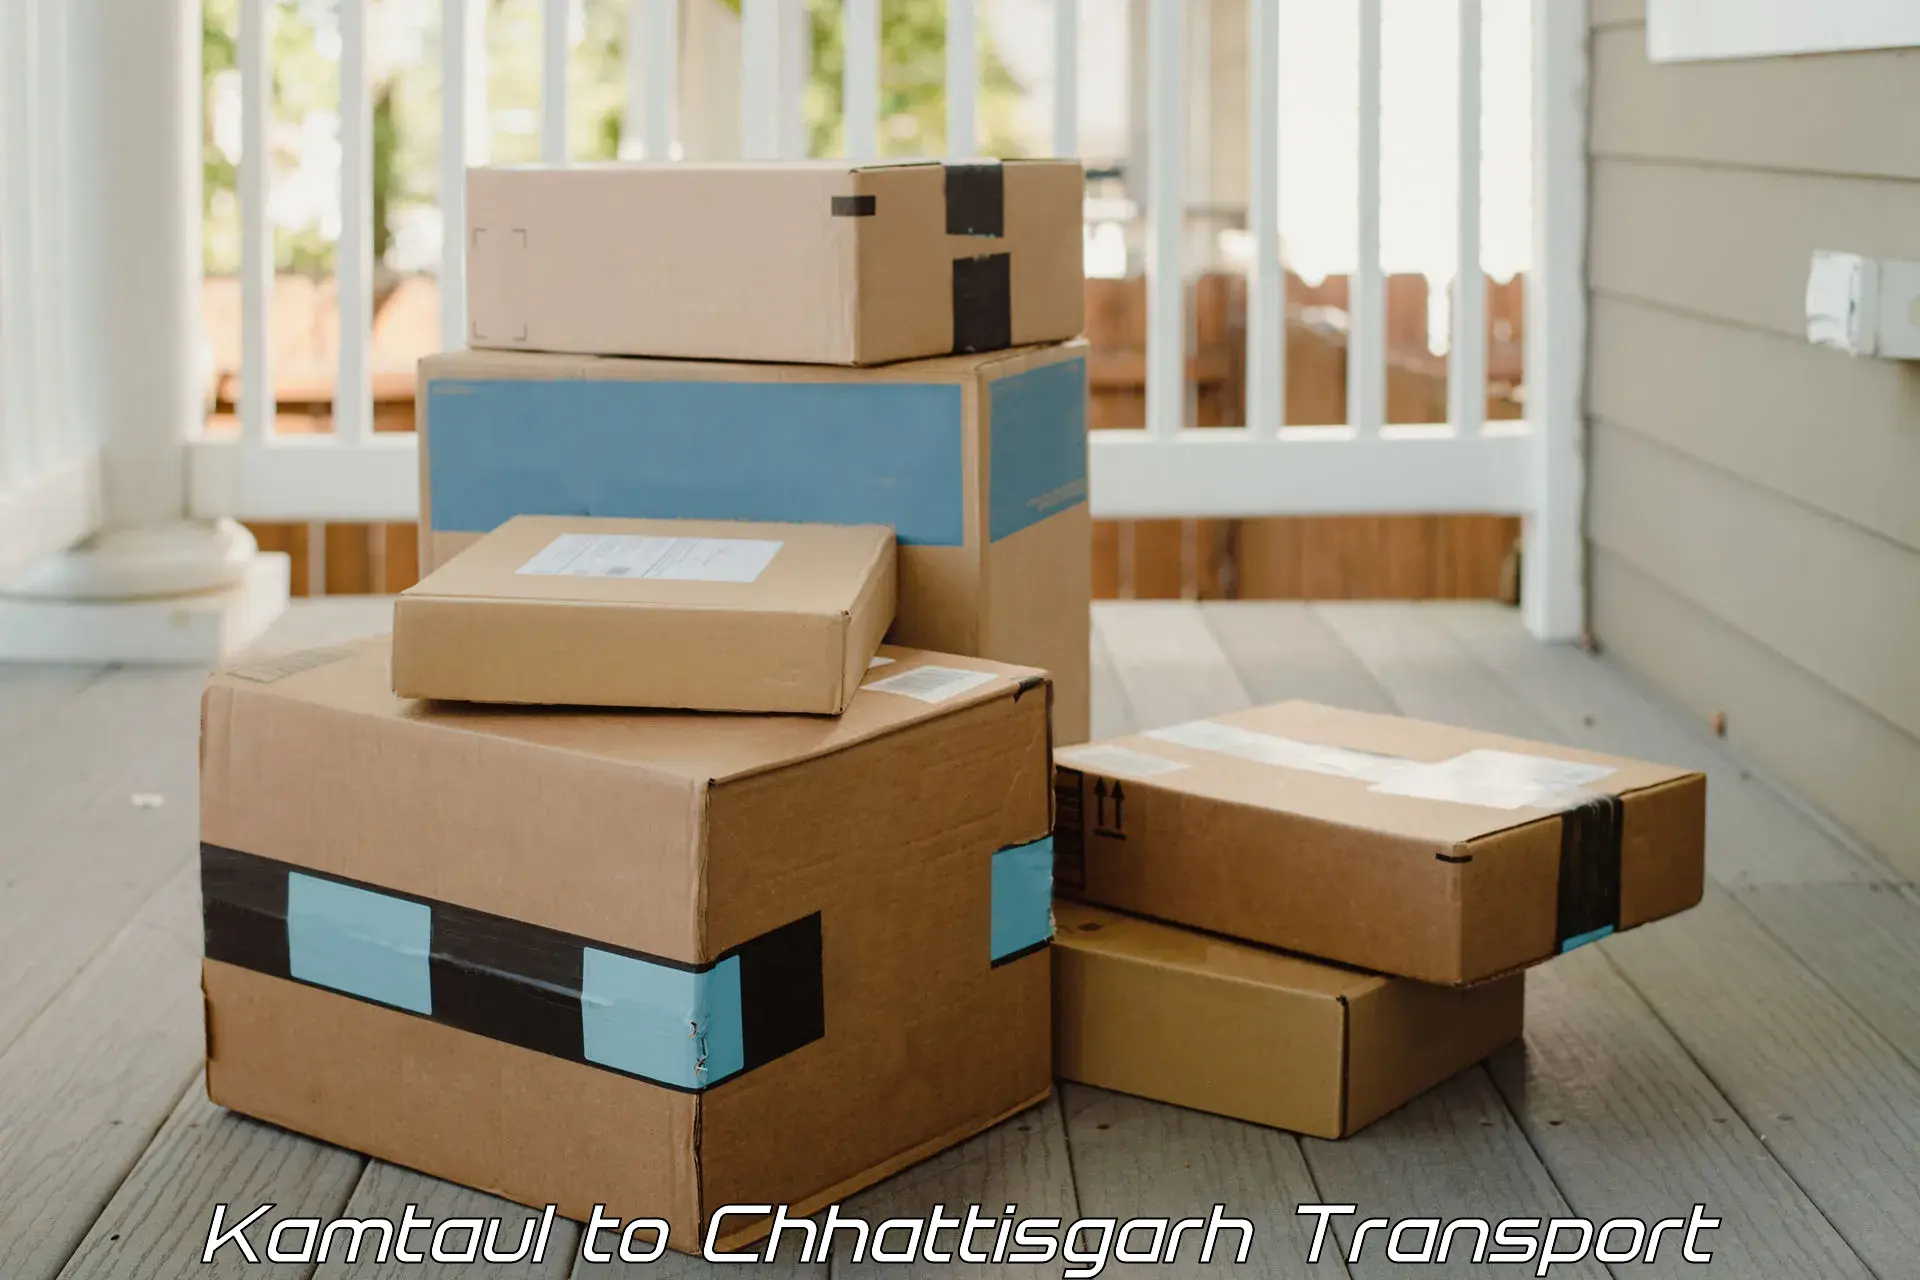 Delivery service Kamtaul to Chhattisgarh